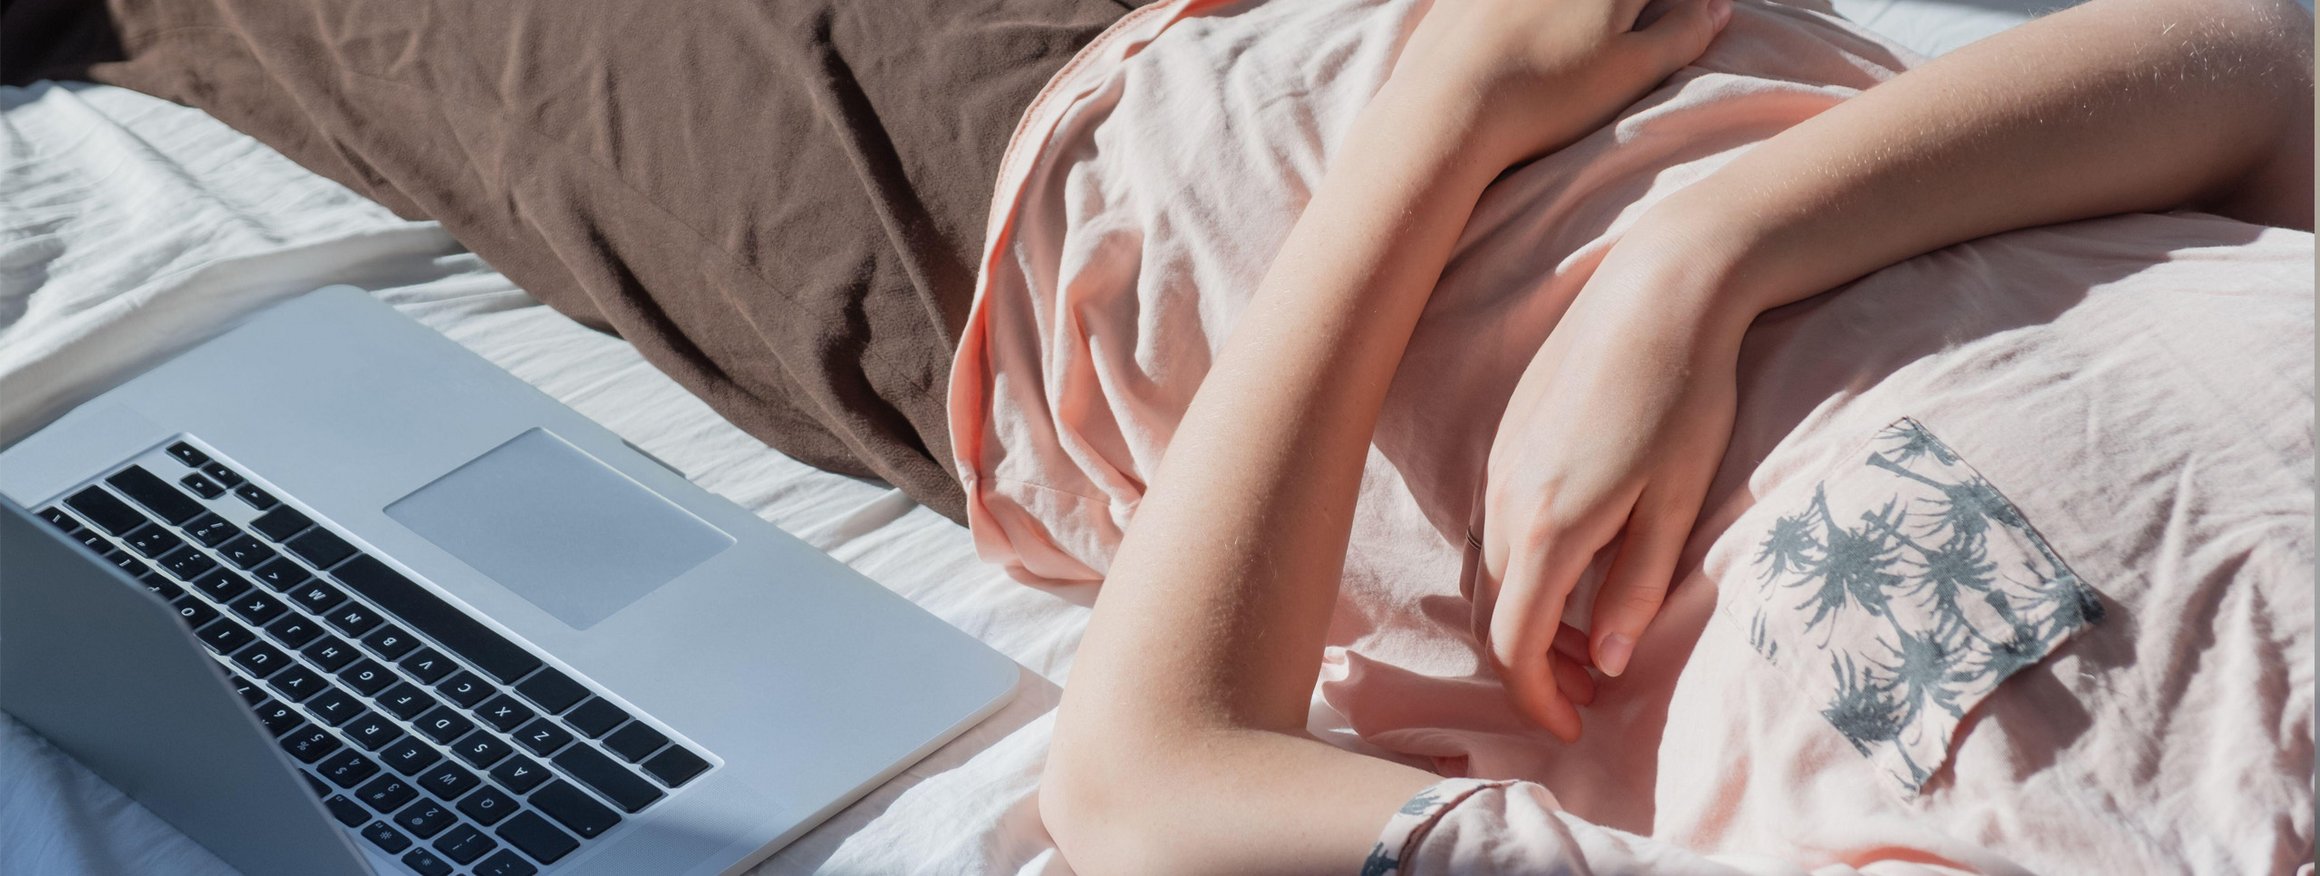 Das Foto zeigt den Ausschnitt einer Person, die neben ihrem Laptop auf dem Bett liegt.